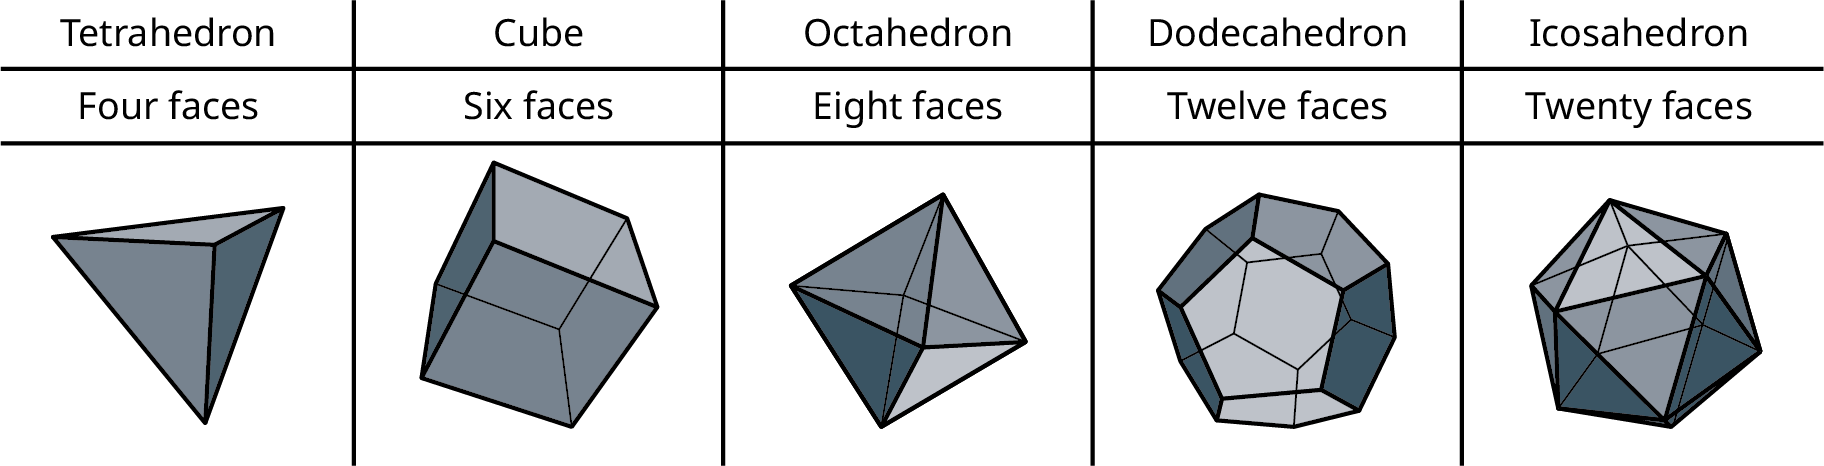 Five polygons. A tetrahedron has four faces. A cube has six faces. An octahedron has eight faces. A dodecahedron has twelve faces. An icosahedron has twenty faces.